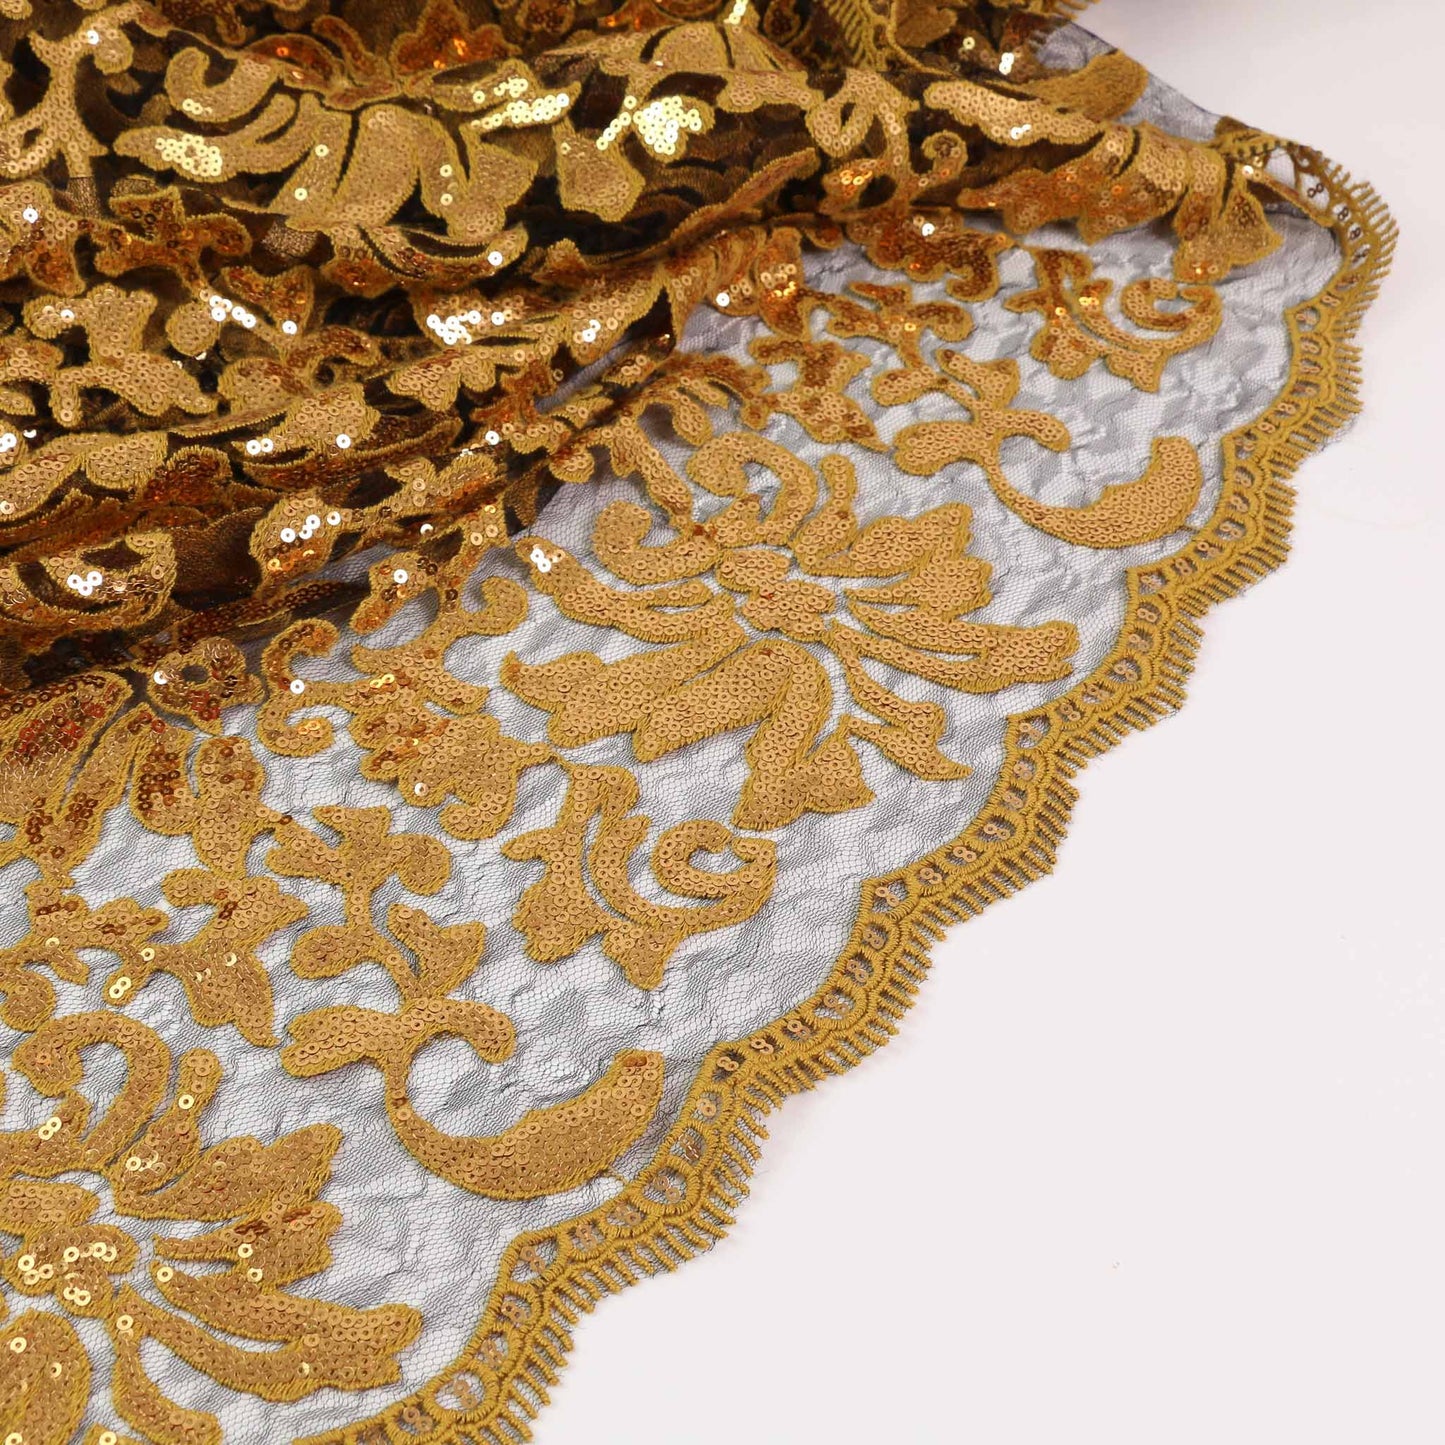 Sequin Fabric - Gold, Black